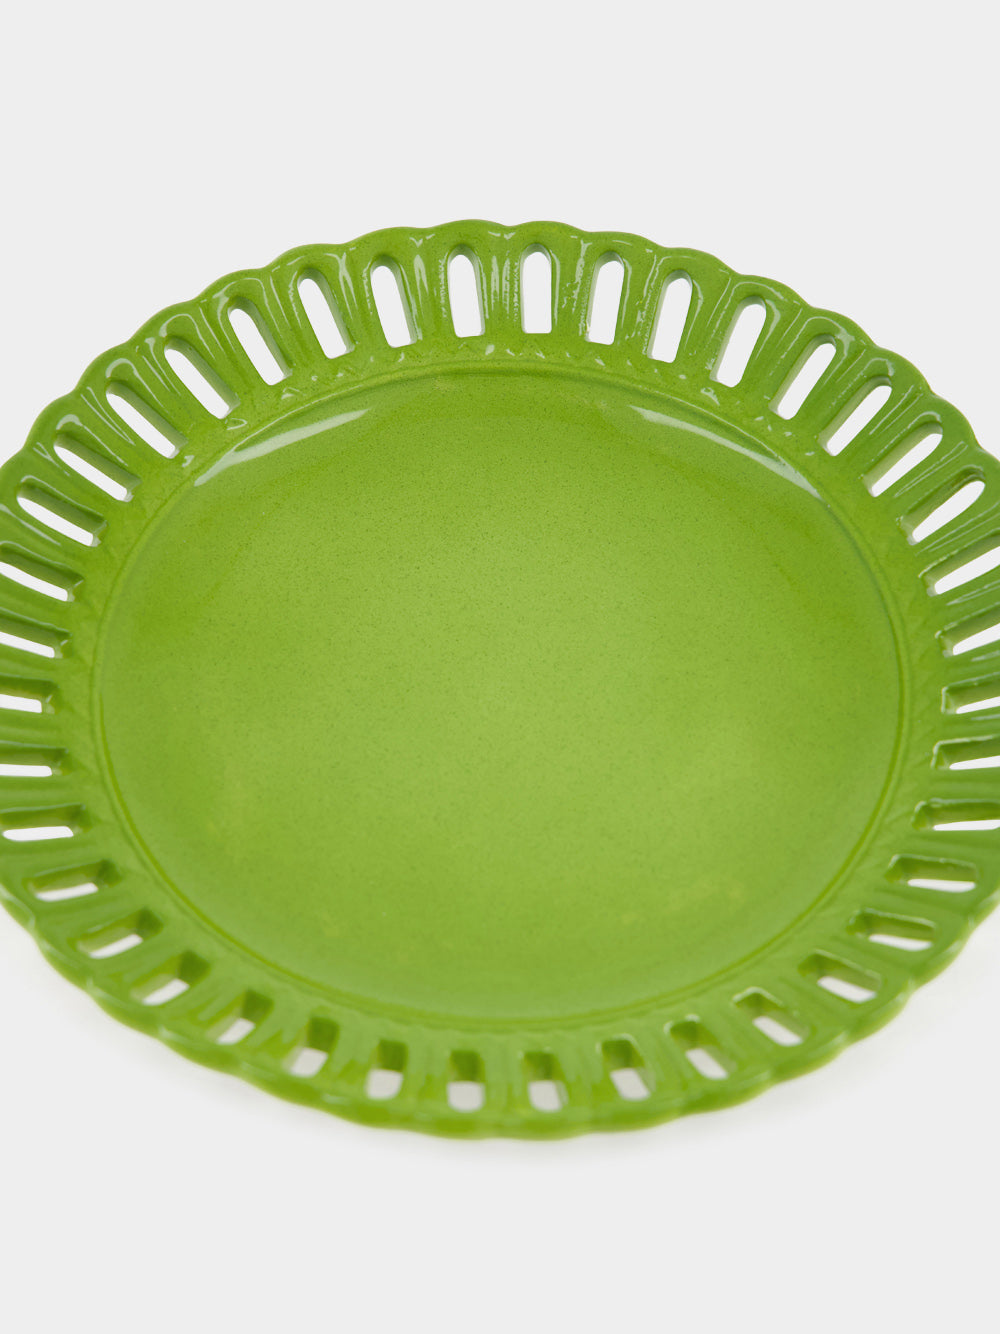 Estoril Handpainted Ceramic Dessert Plate